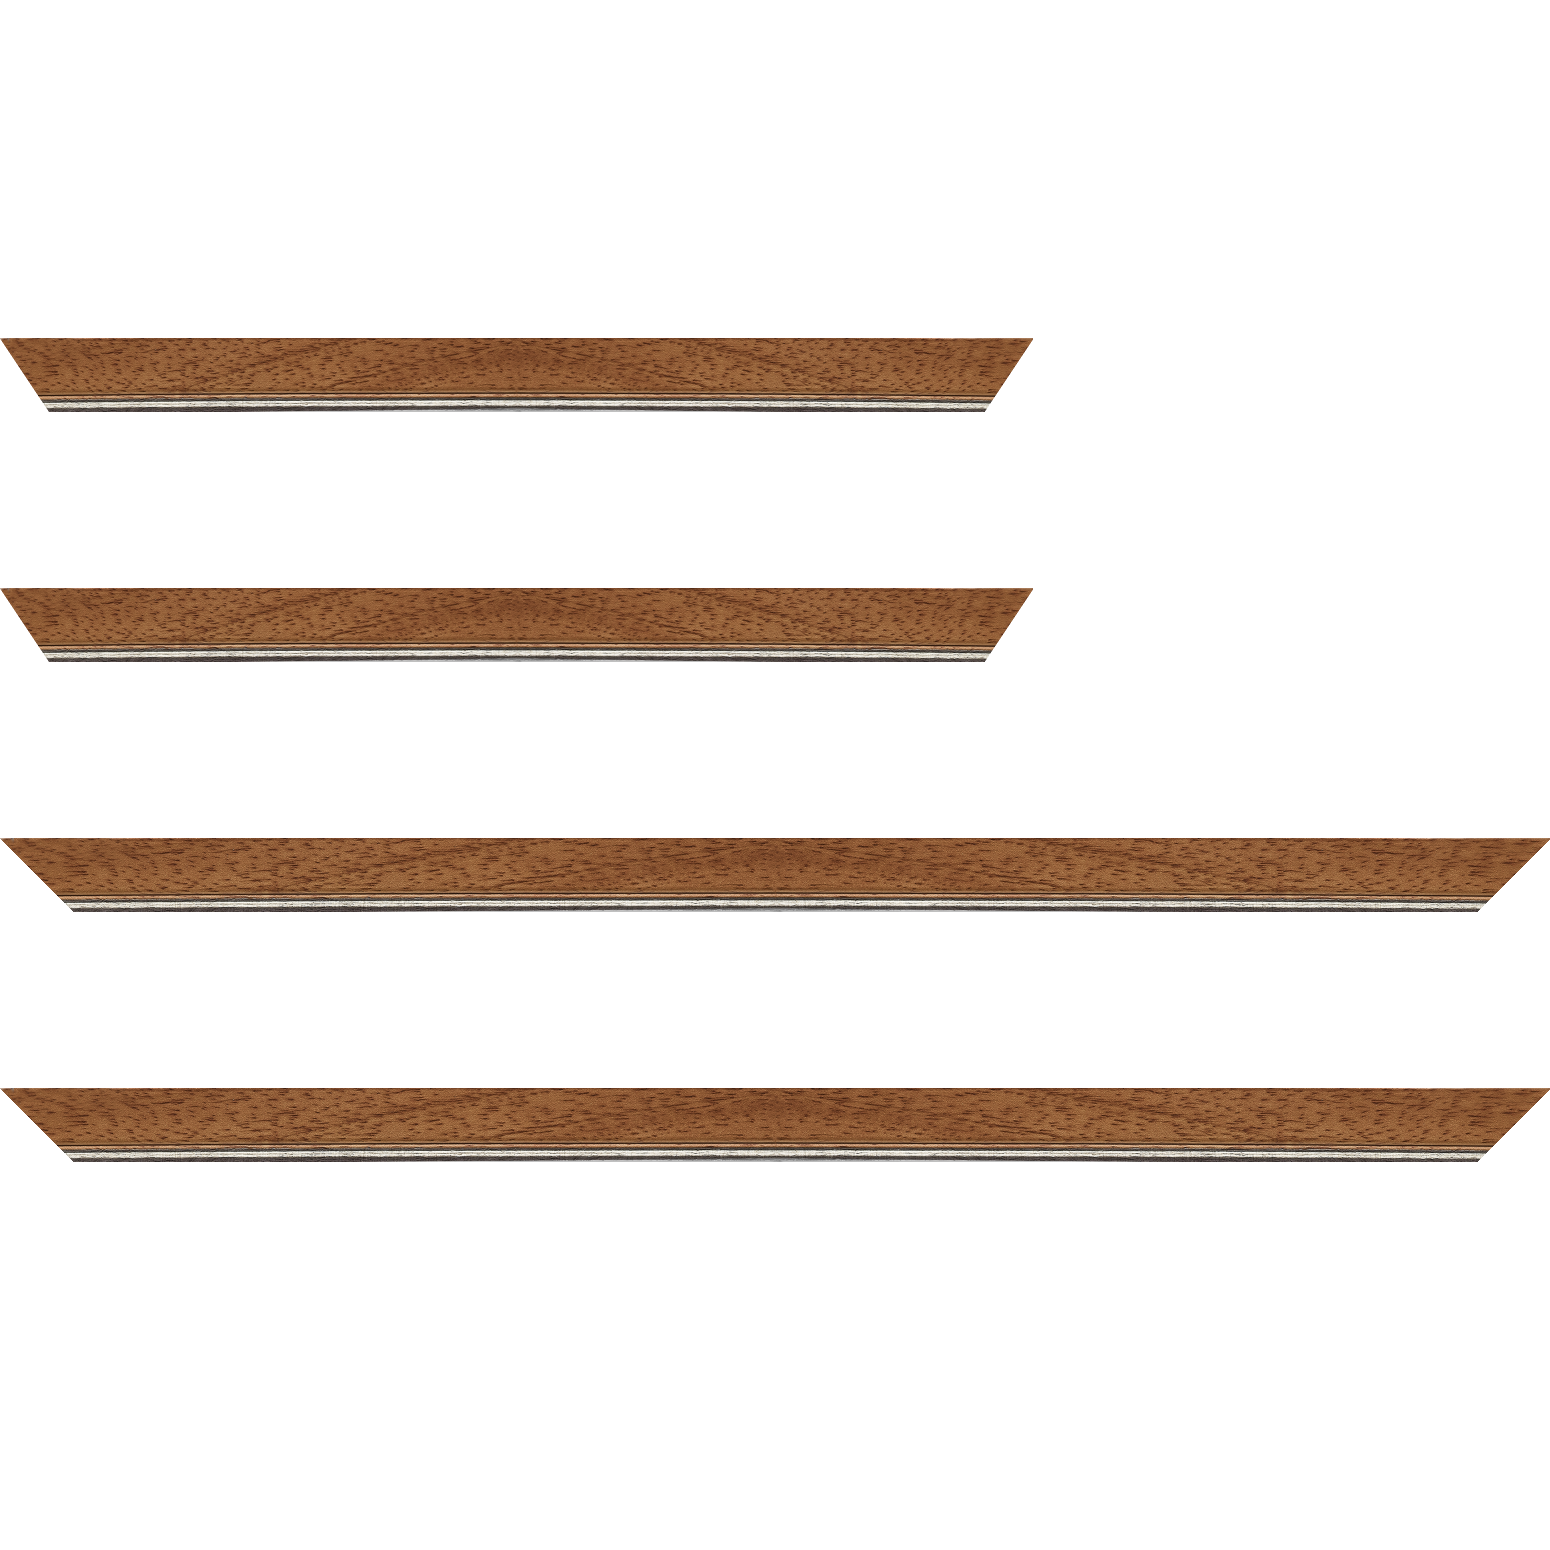 Baguette bois profil plat largeur 2.5cm couleur marron ton bois filet argent - 28x34